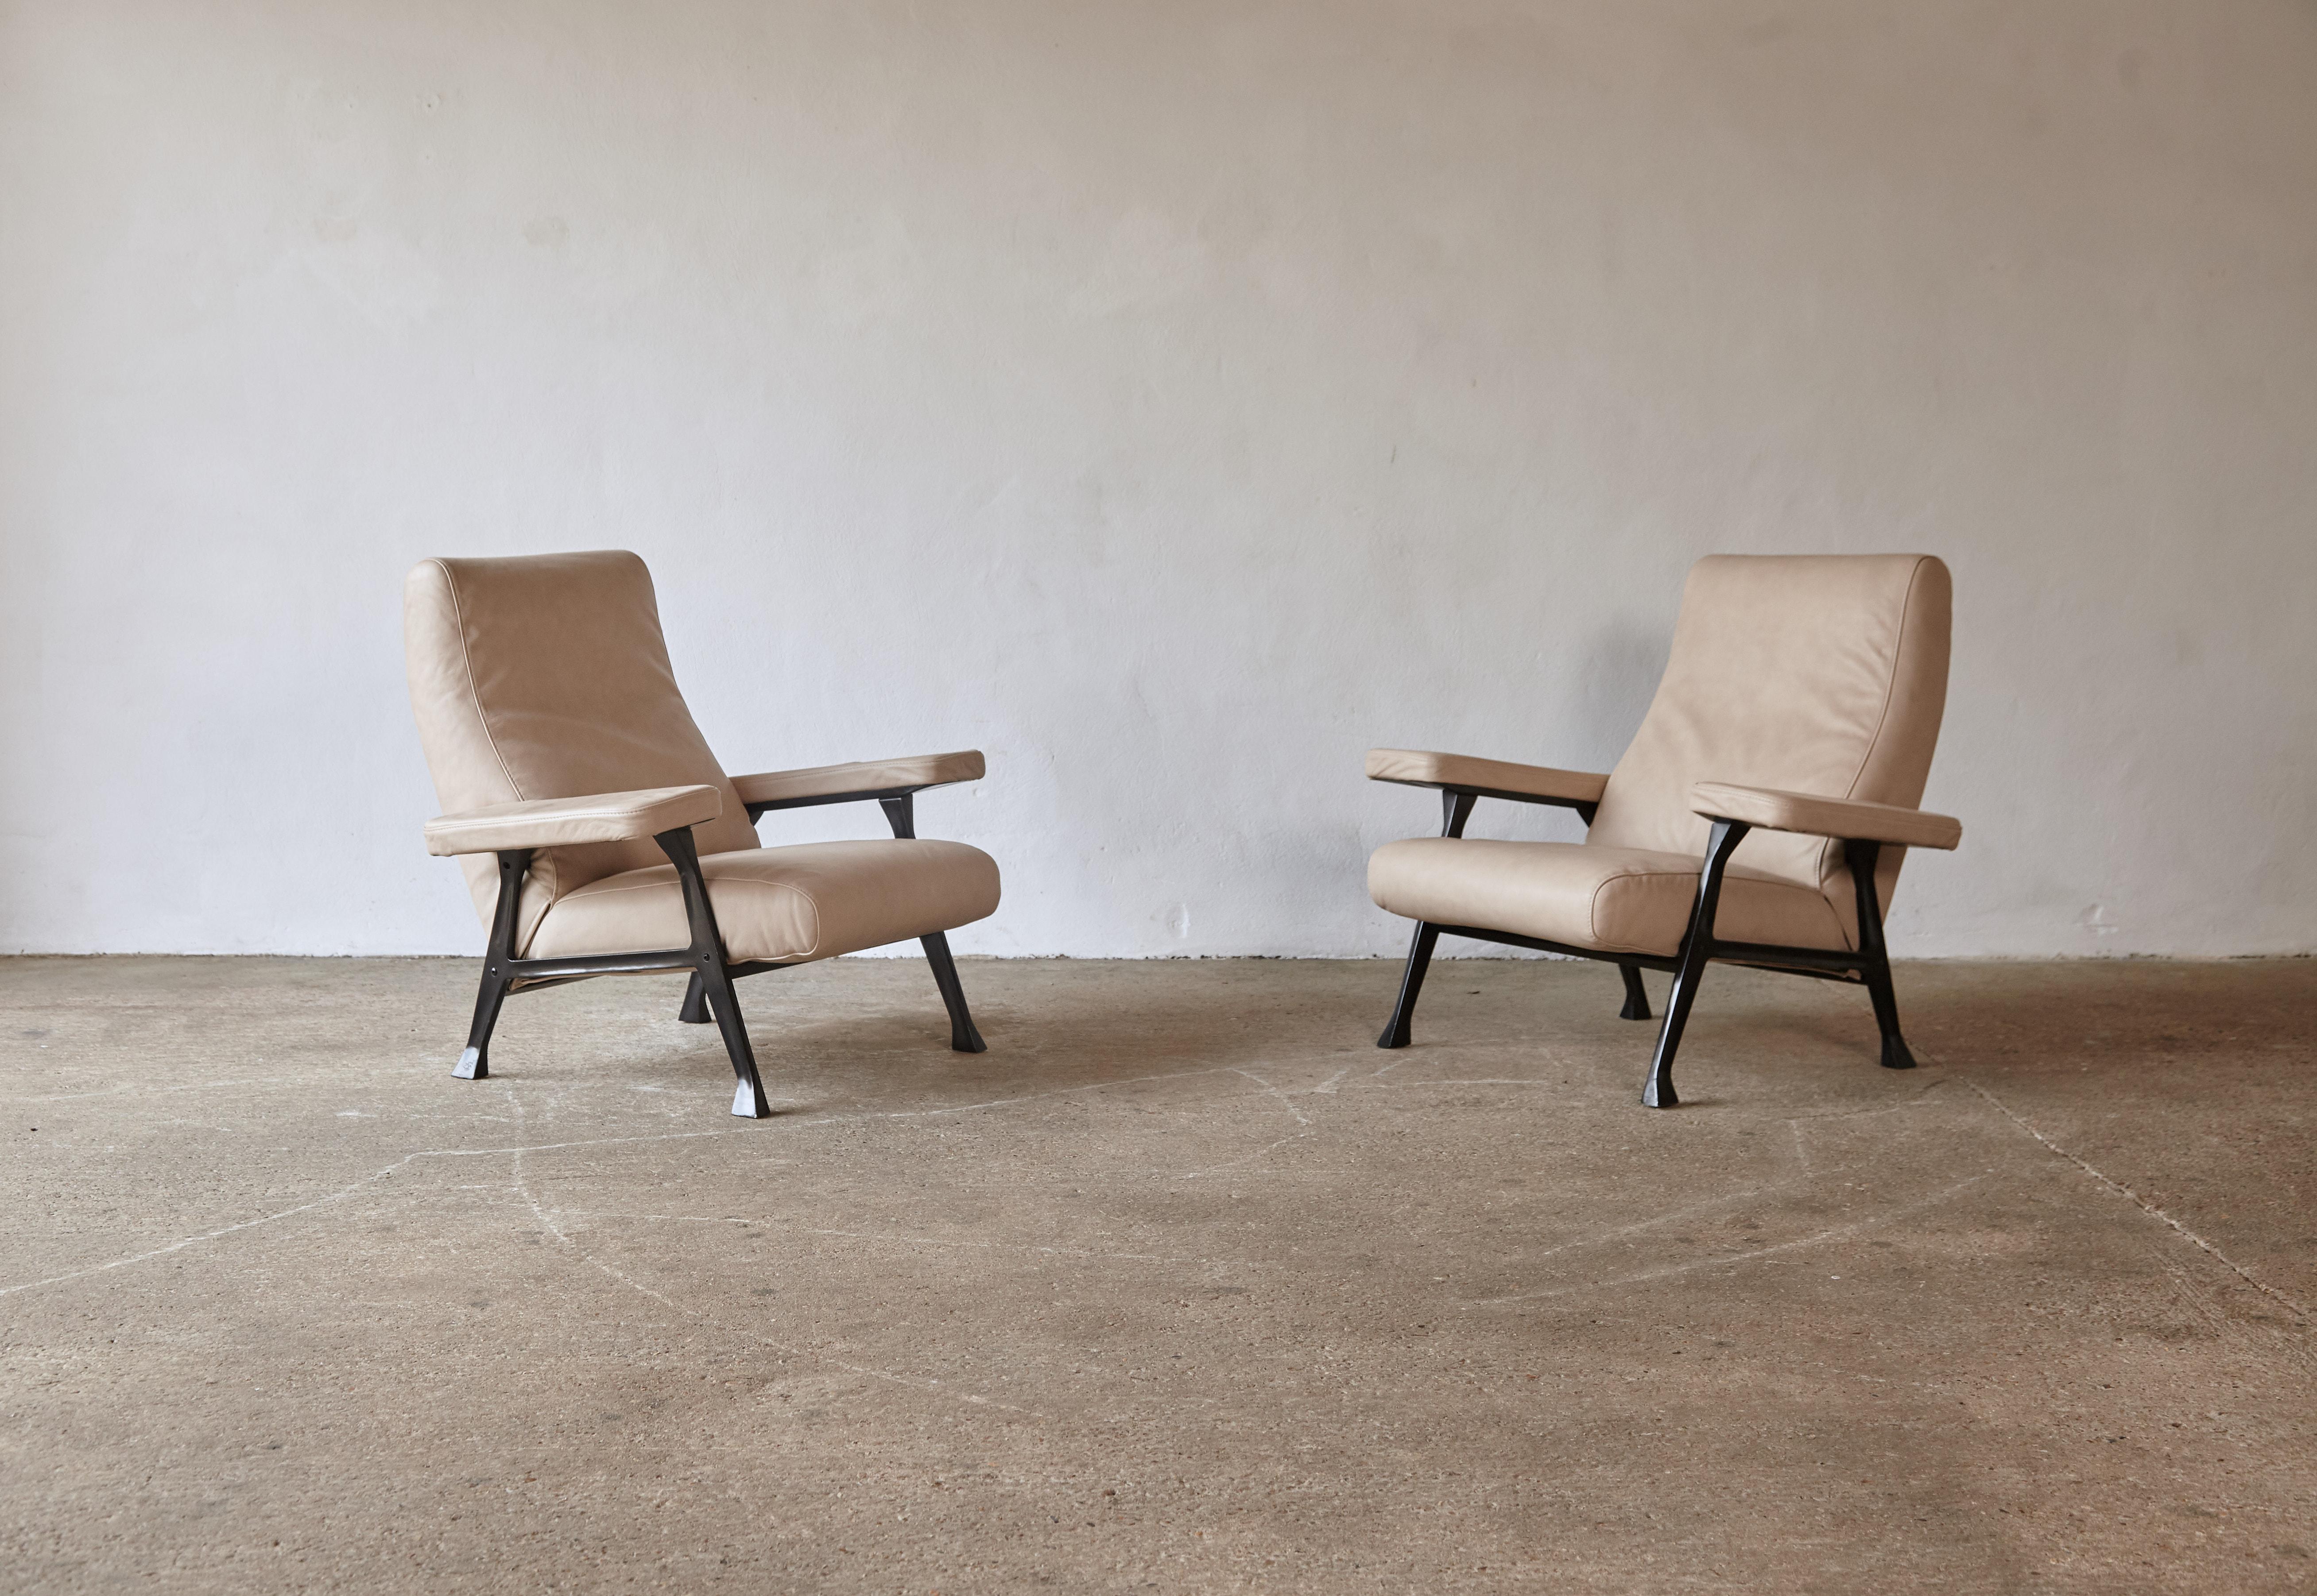 Paire originale et rare de chaises de salle Roberto Menghi, produites par Arflex, Italie, années 1950. La tapisserie d'ameublement a pris de l'âge et ces chaises peuvent être retapissées dans le tissu choisi par le client. Les cadres métalliques